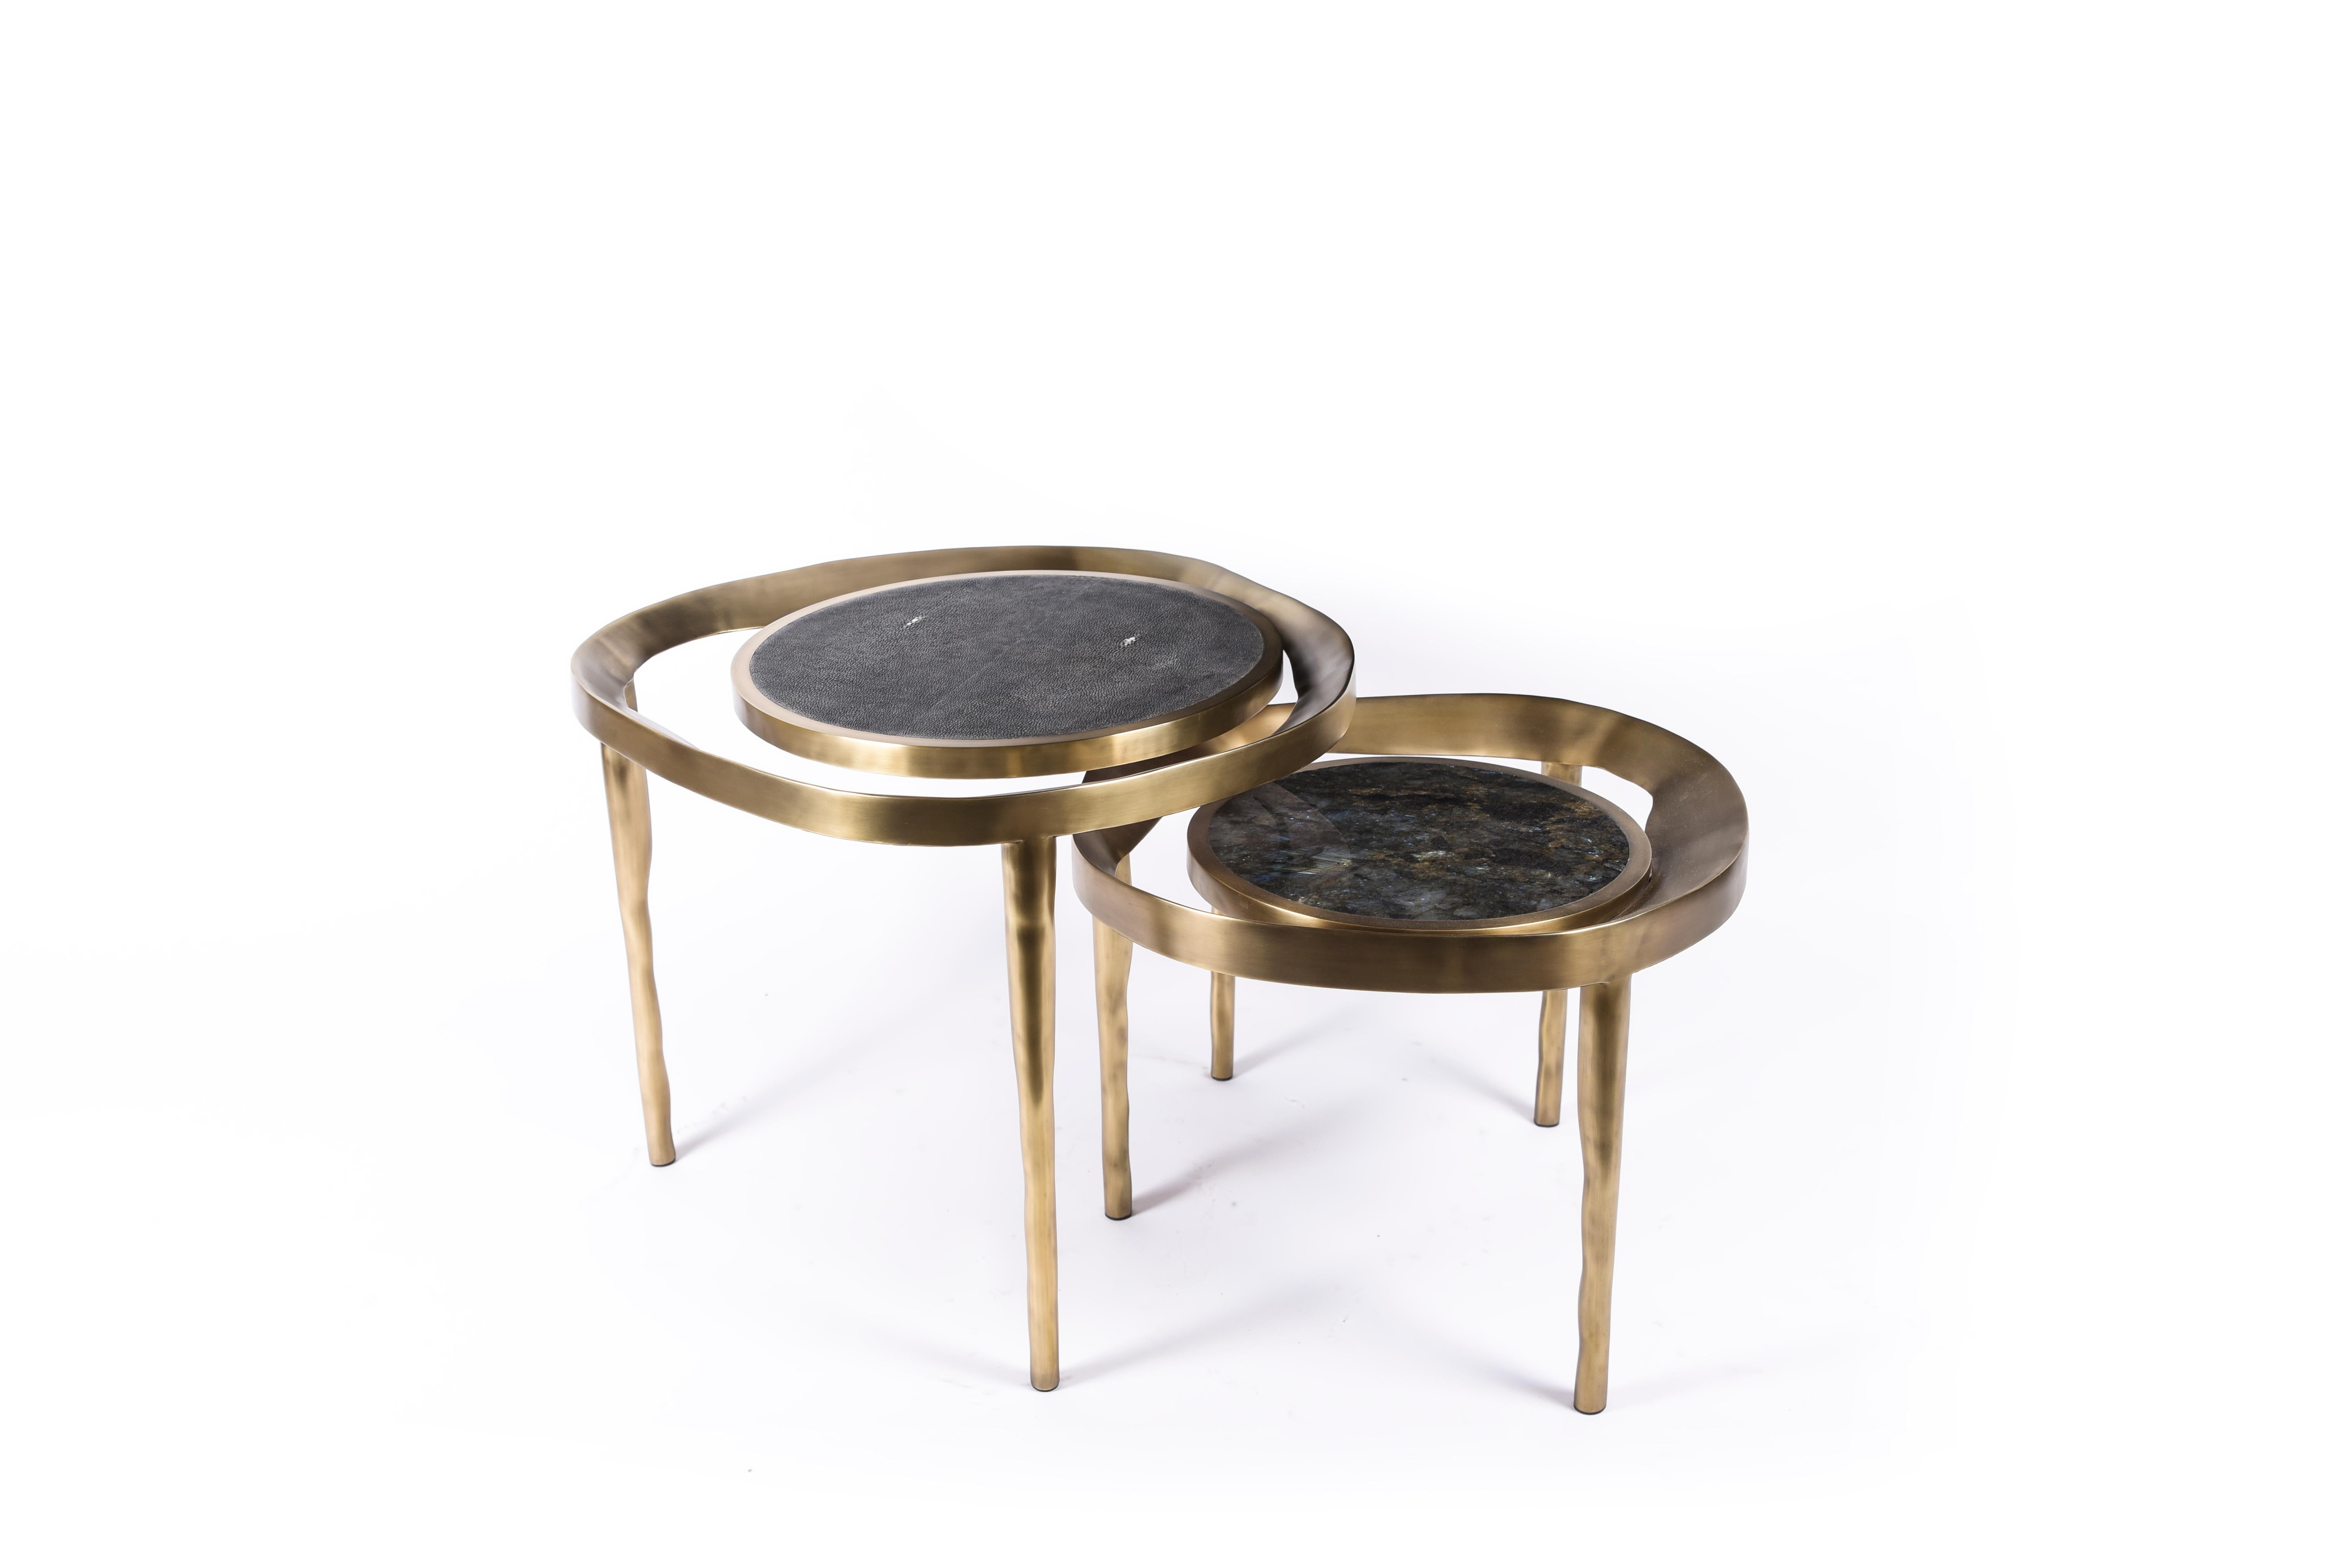 Le set de 2 tables basses lily melting est une pièce fantaisiste et dramatique pour tout espace. Le cadre en laiton bronze-patine aux formes amorphes s'adapte aux pieds à la forme bosselée. Les plateaux circulaires flottants sont incrustés de